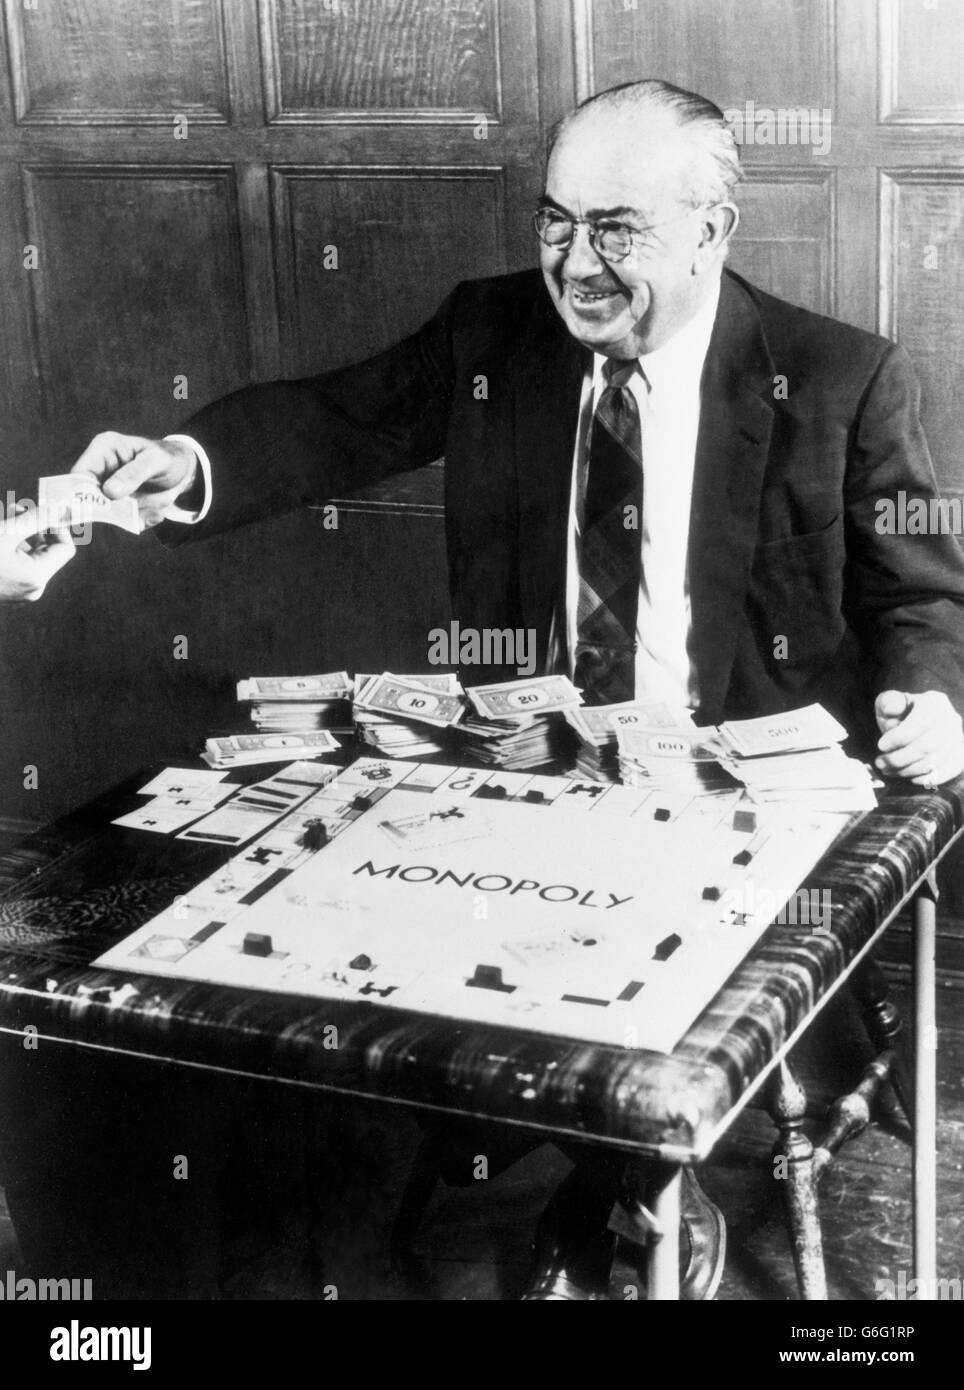 Charles B Darrow, che ha fatto una fortuna inventando il monopolio del gioco quando era fuori lavoro durante la Grande depressione. Data sconosciuta. Foto Stock